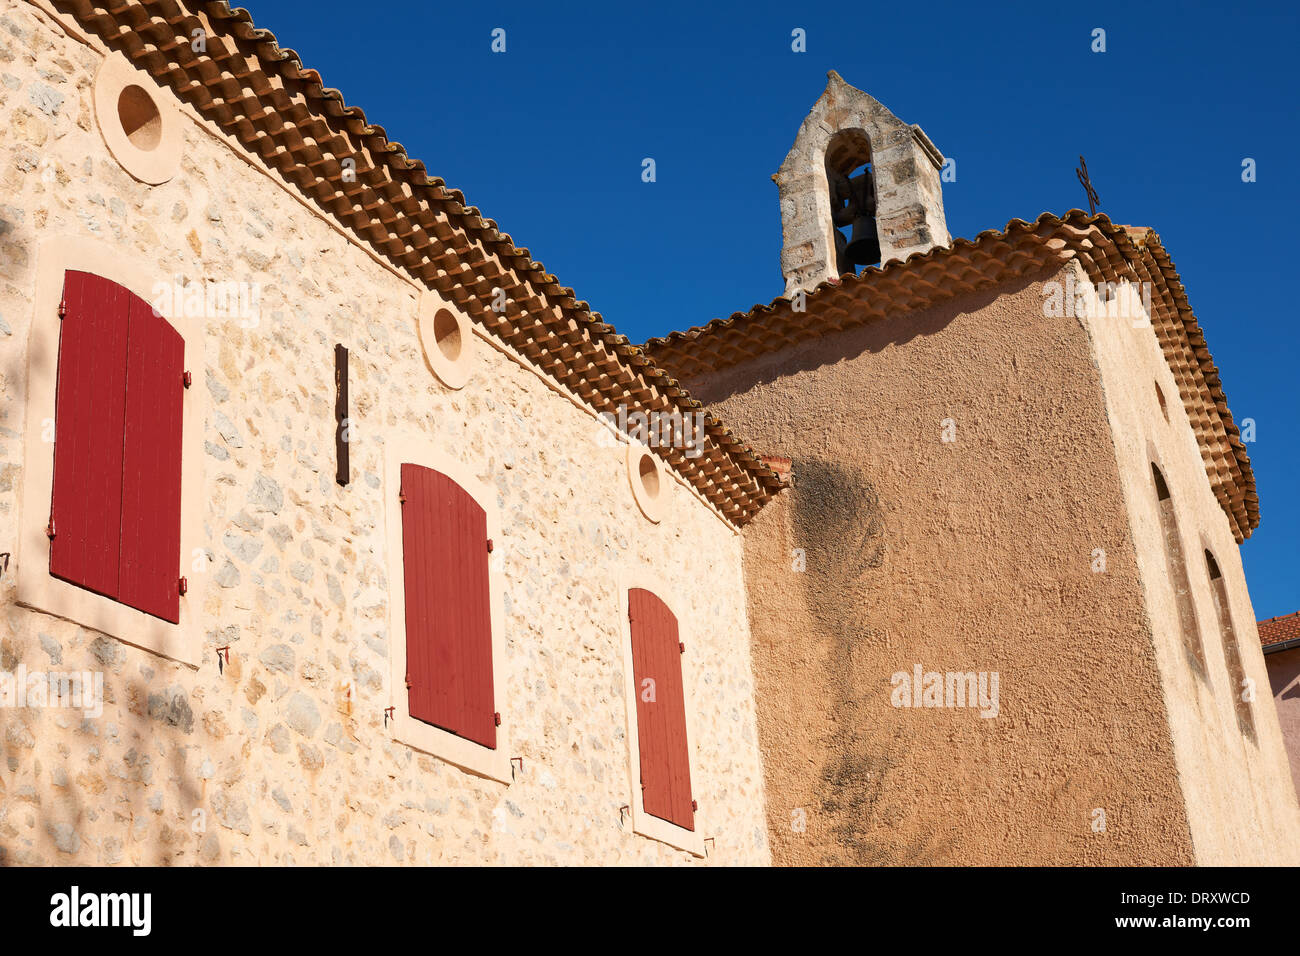 Die Fassade des Rathauses in Saint-Antonin Sur Bayon, in der Nähe von Aix-En-Provence, Frankreich Stockfoto